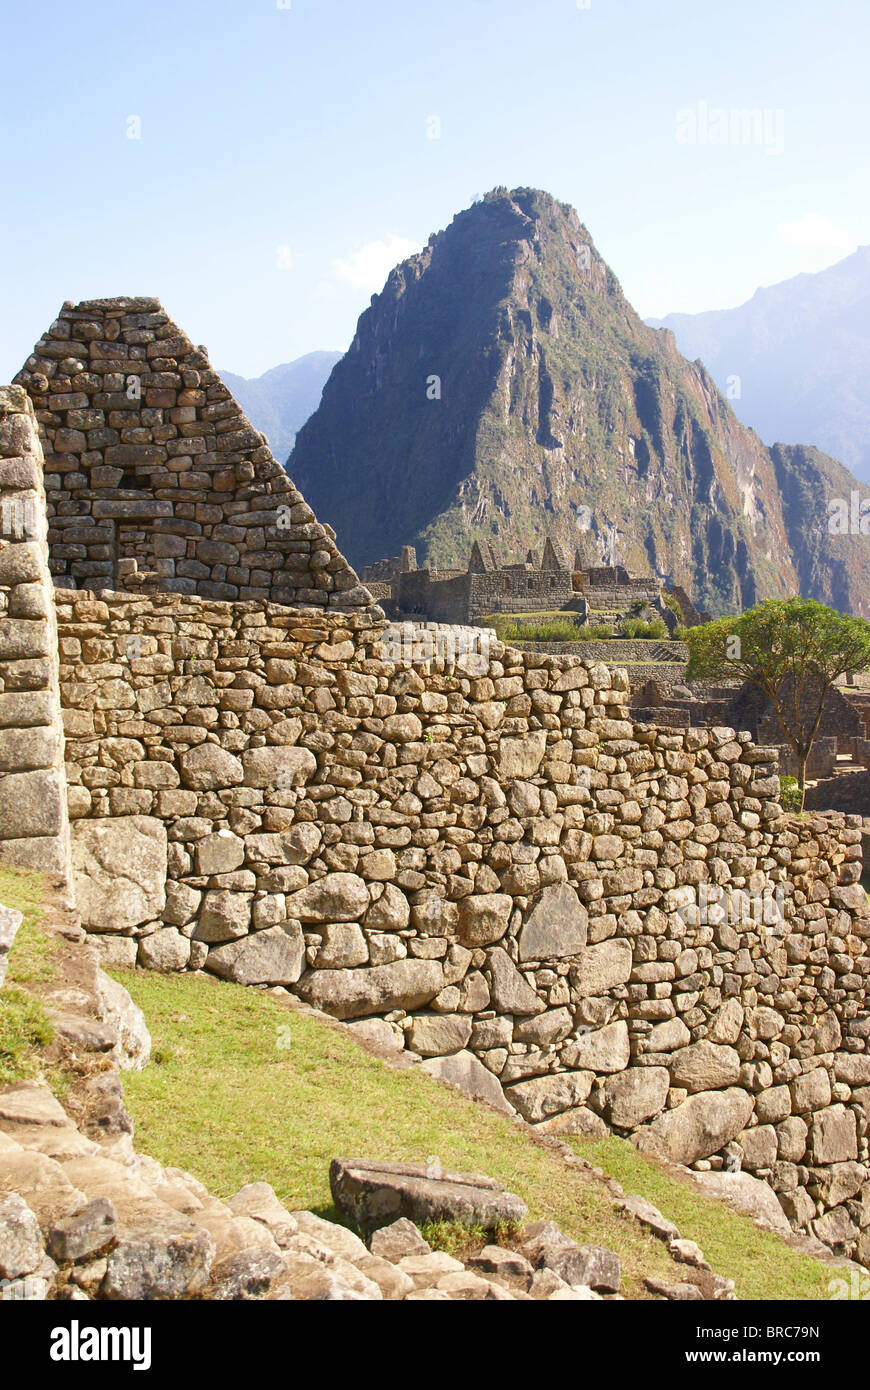 Huayna Picchu montagne surplombant les ruines Inca de Machu Picchu, Pérou, Amérique du Sud Banque D'Images